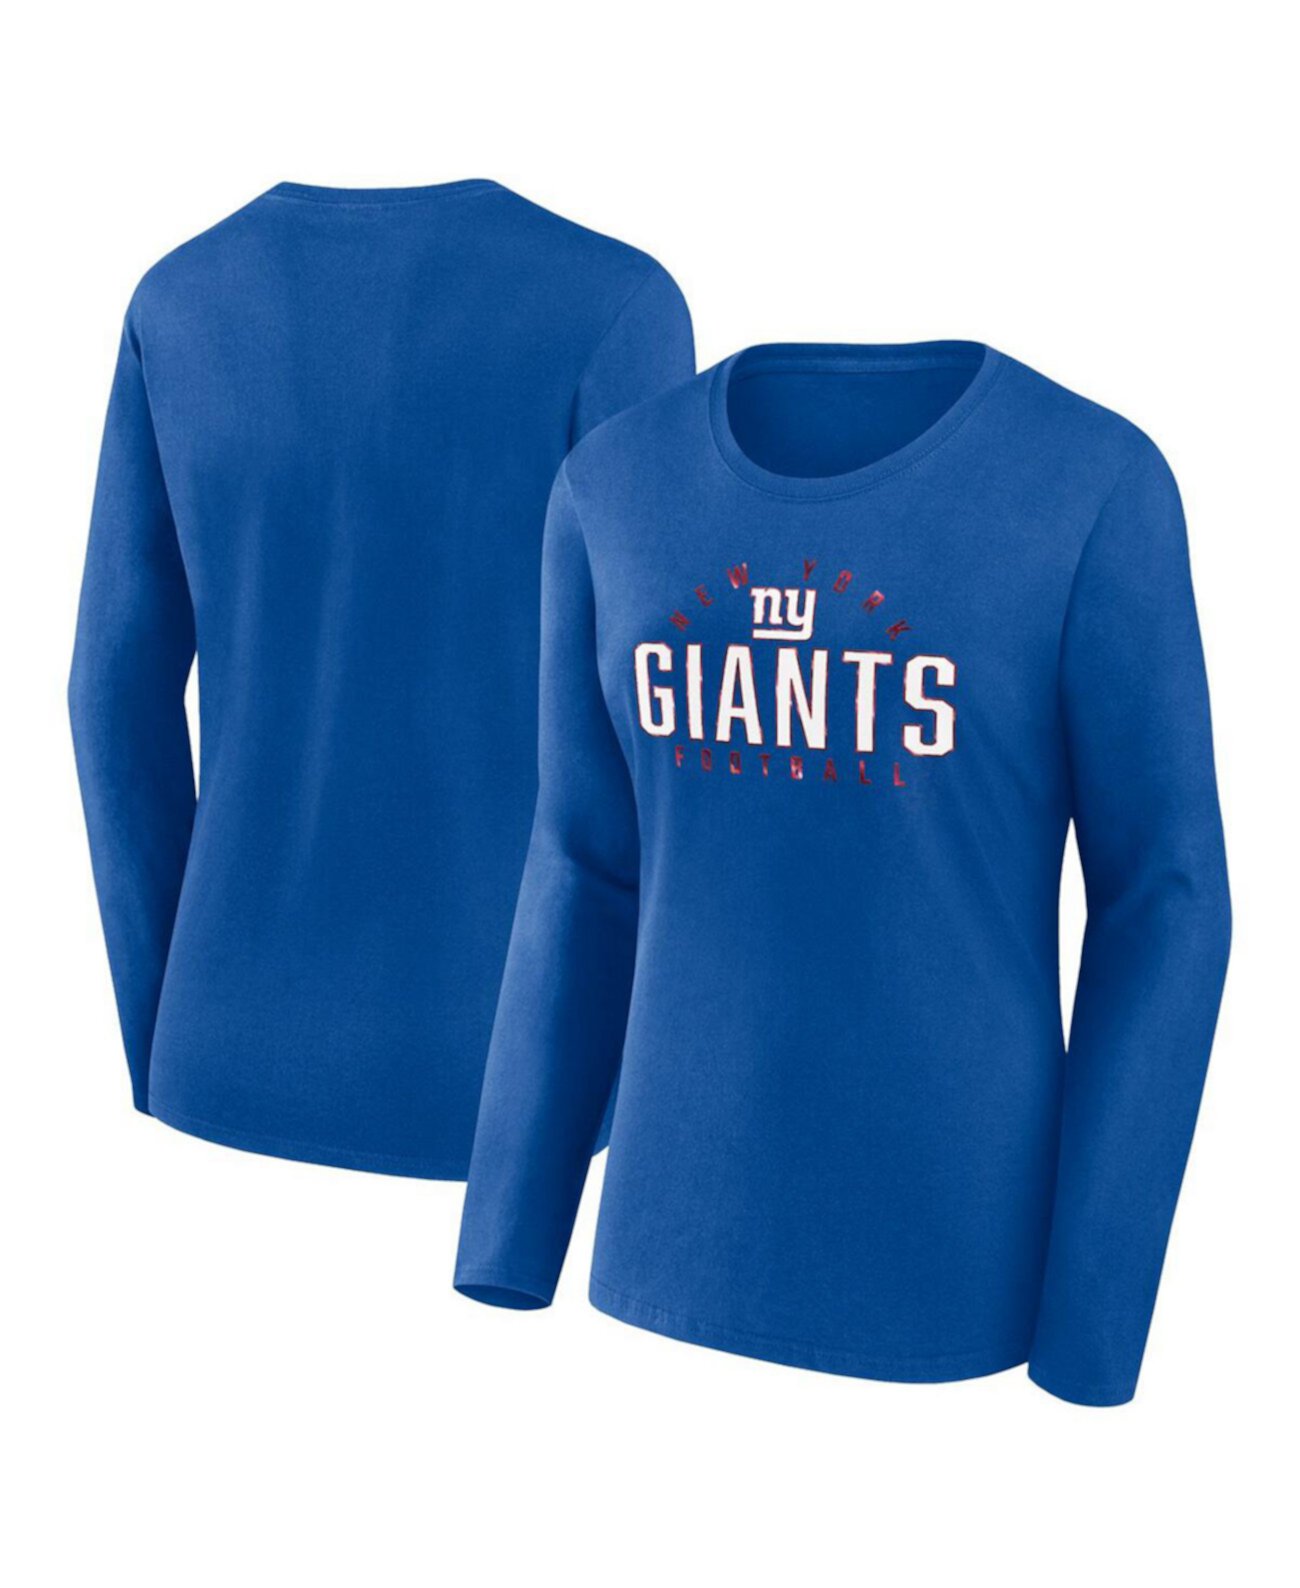 Женская футболка больших размеров с длинными рукавами Royal New York Giants Fanatics